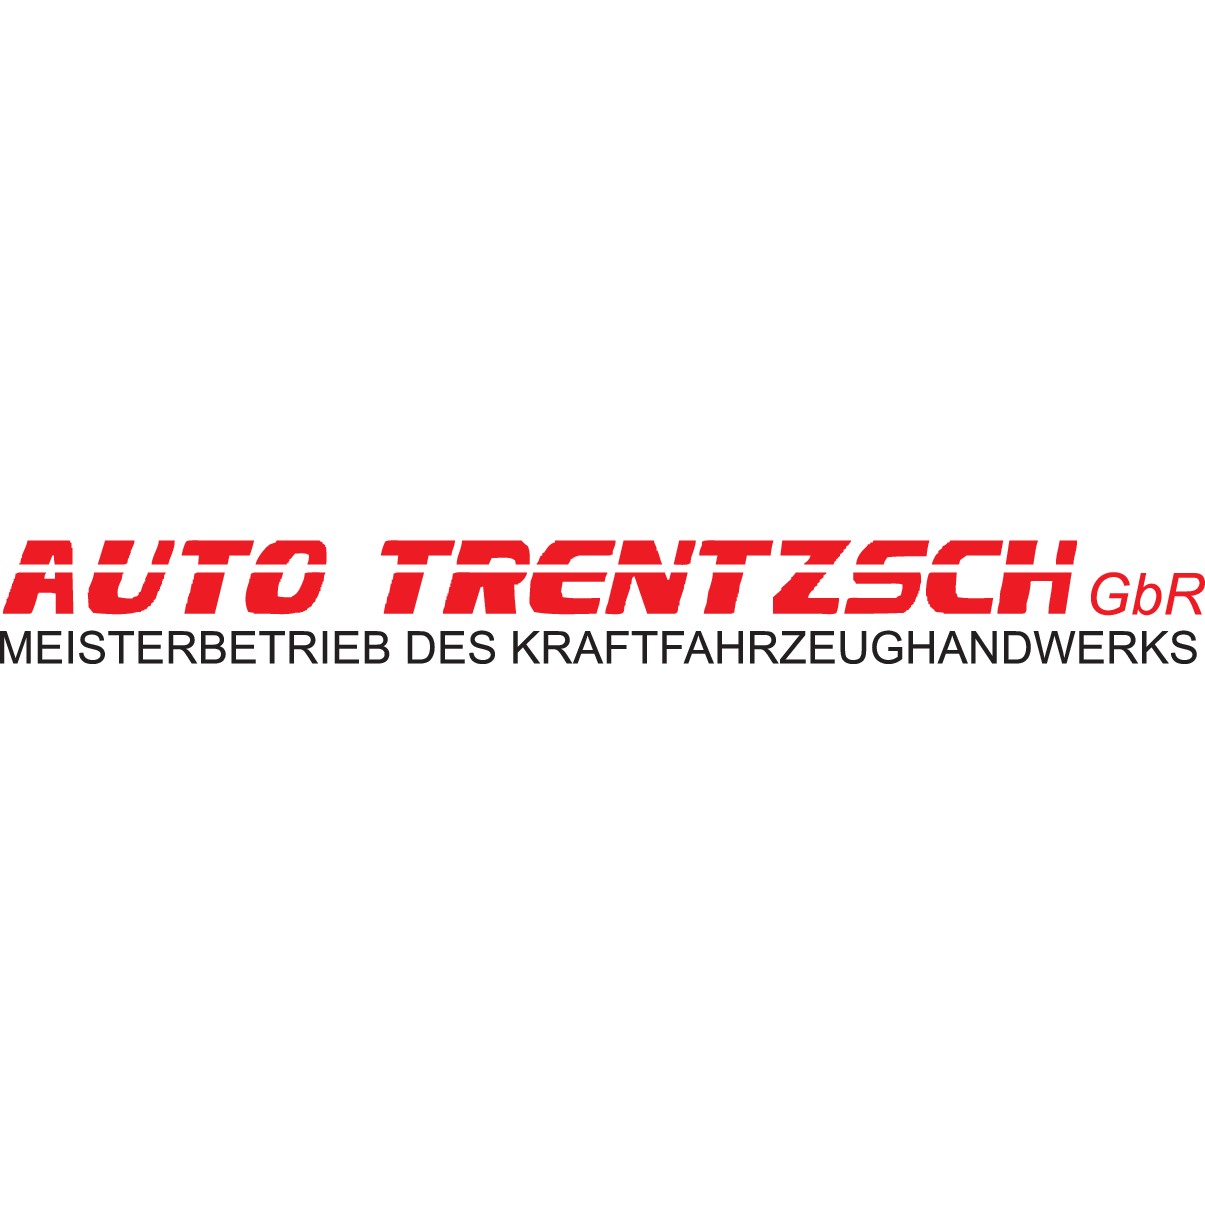 Logo von Auto Trentzsch GbR